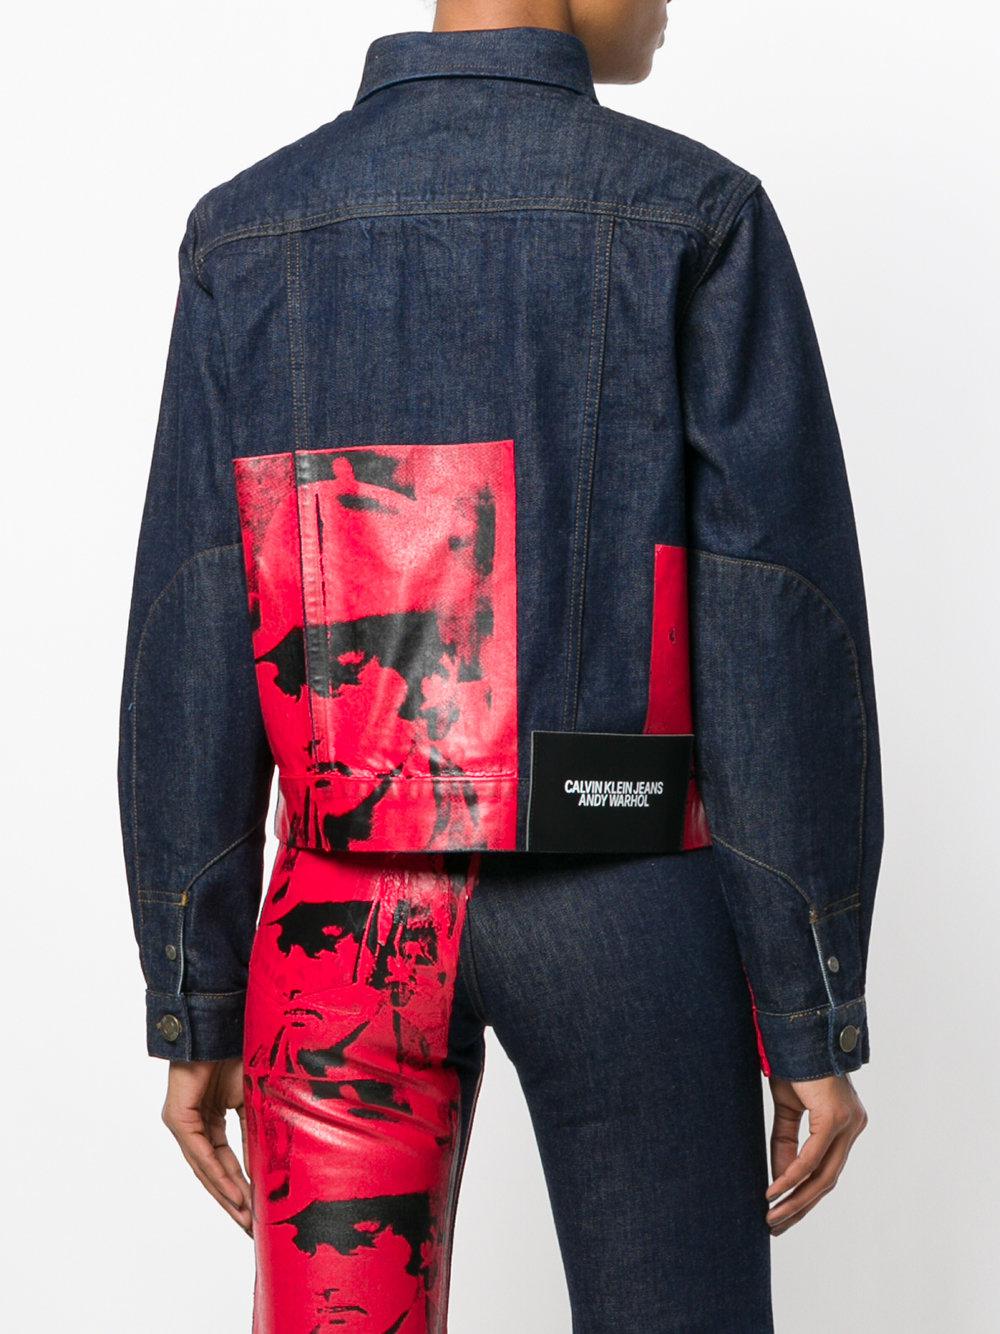 CALVIN KLEIN 205W39NYC X Andy Warhol Foundation Dennis Hopper Denim Jacket  in Blue | Lyst Canada